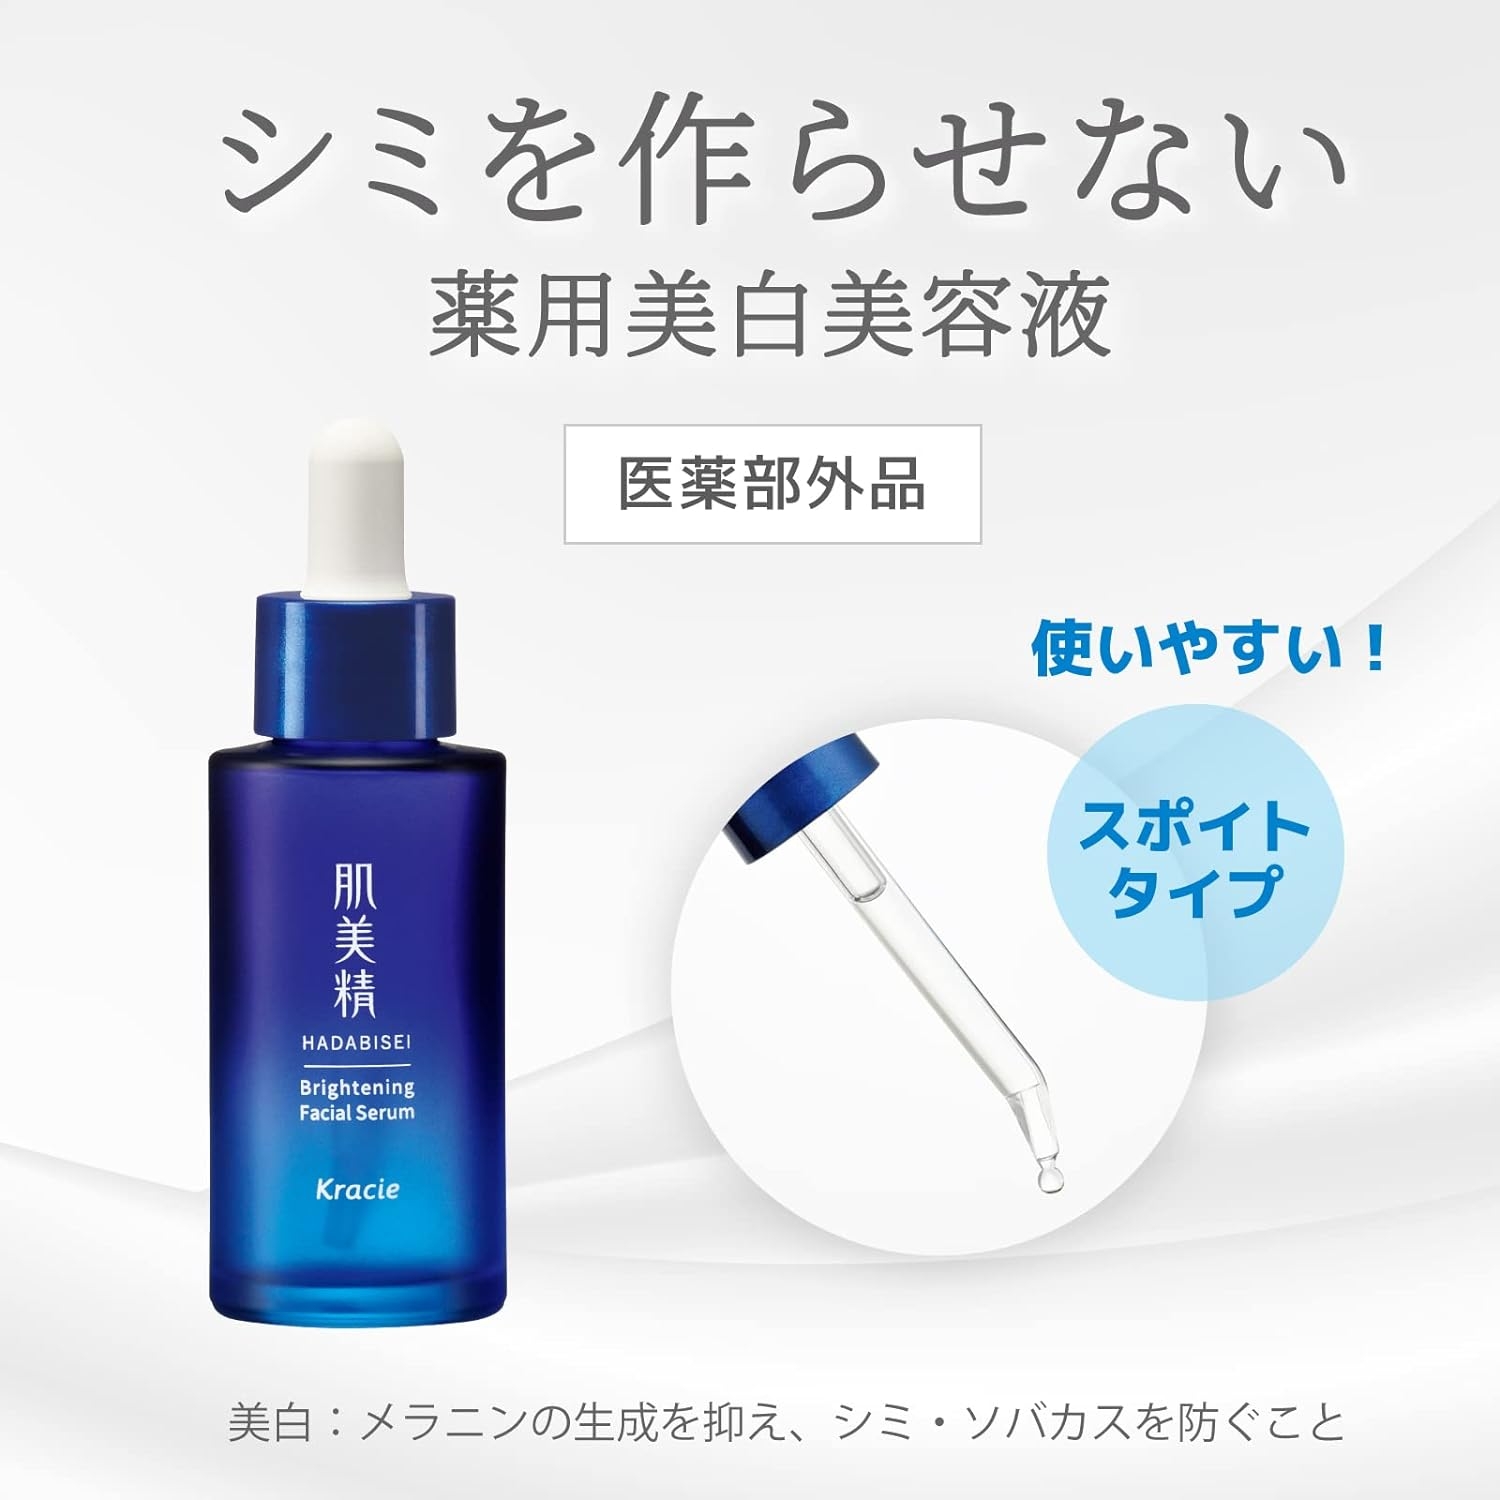 肌美精(HADABISEI) ターニングケア美白 薬用美白美容液の商品画像6 